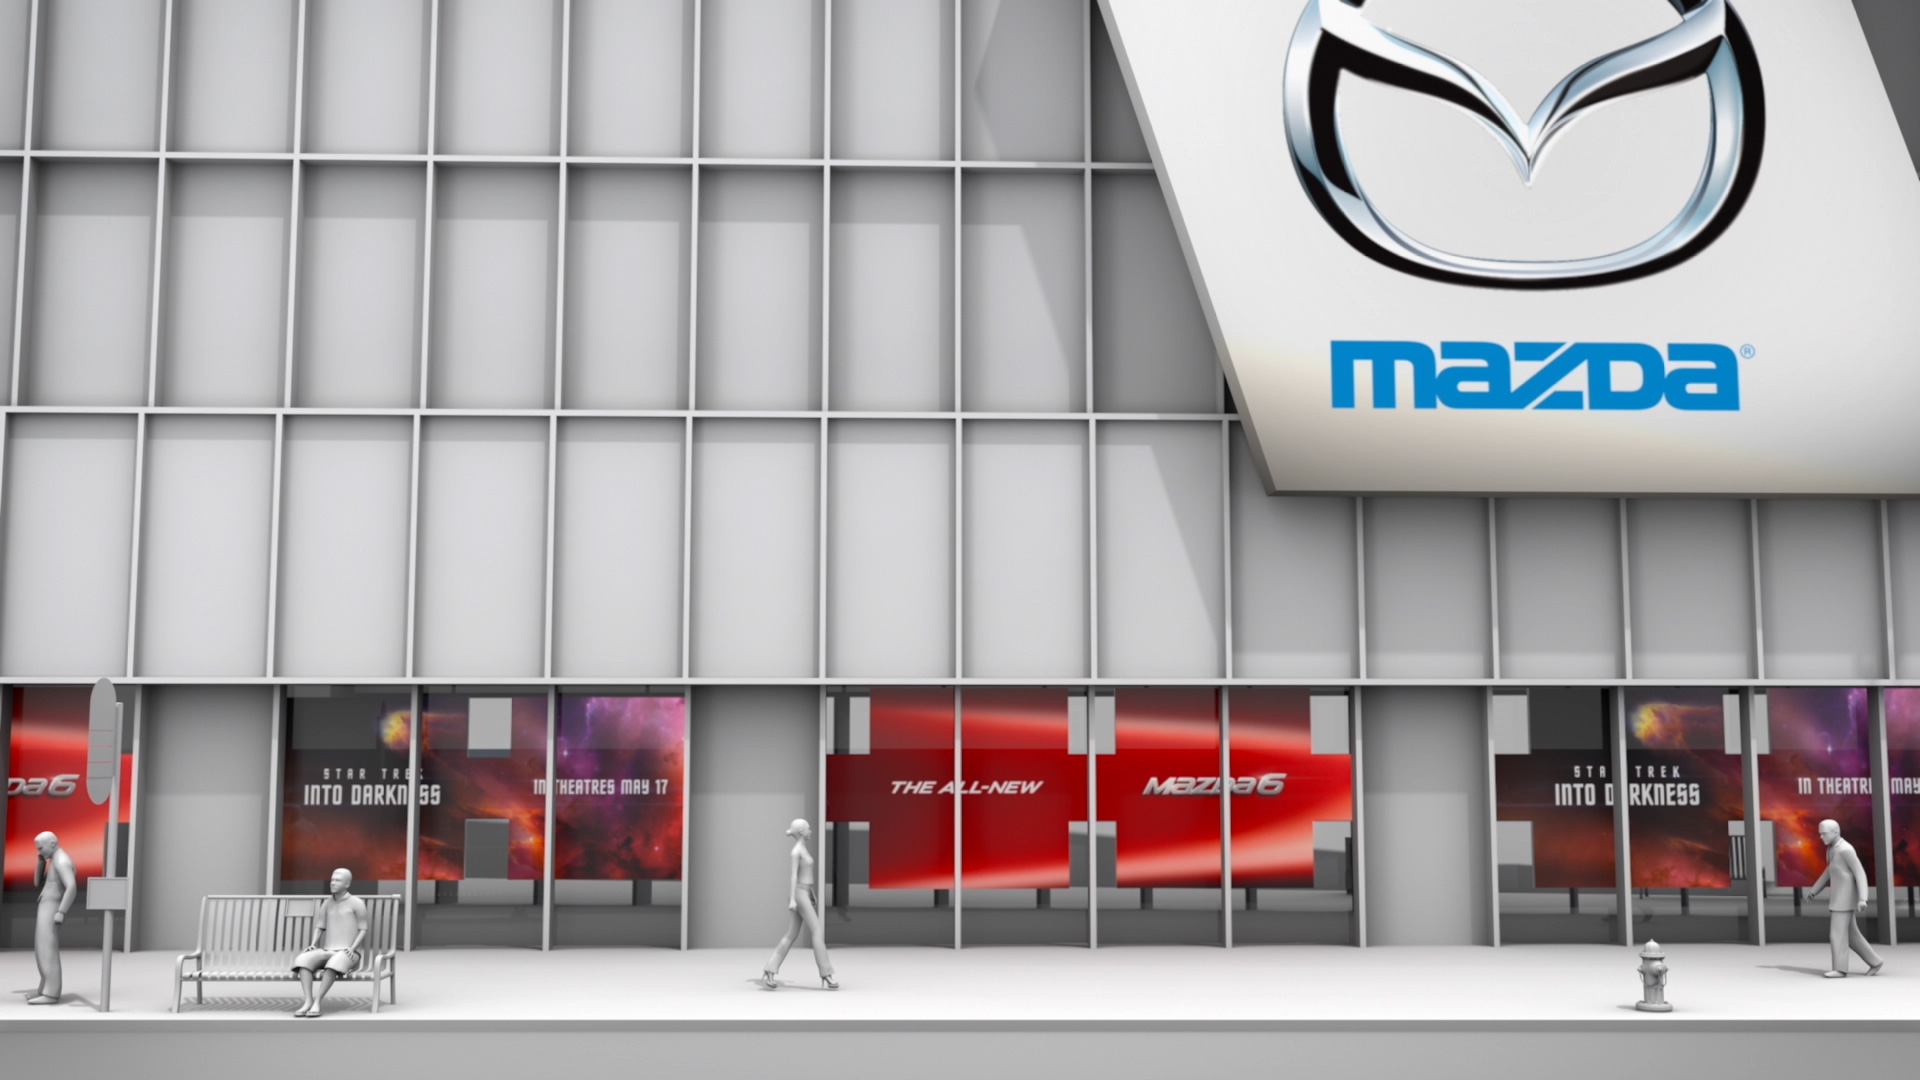 Mazda Times Square: Case Study